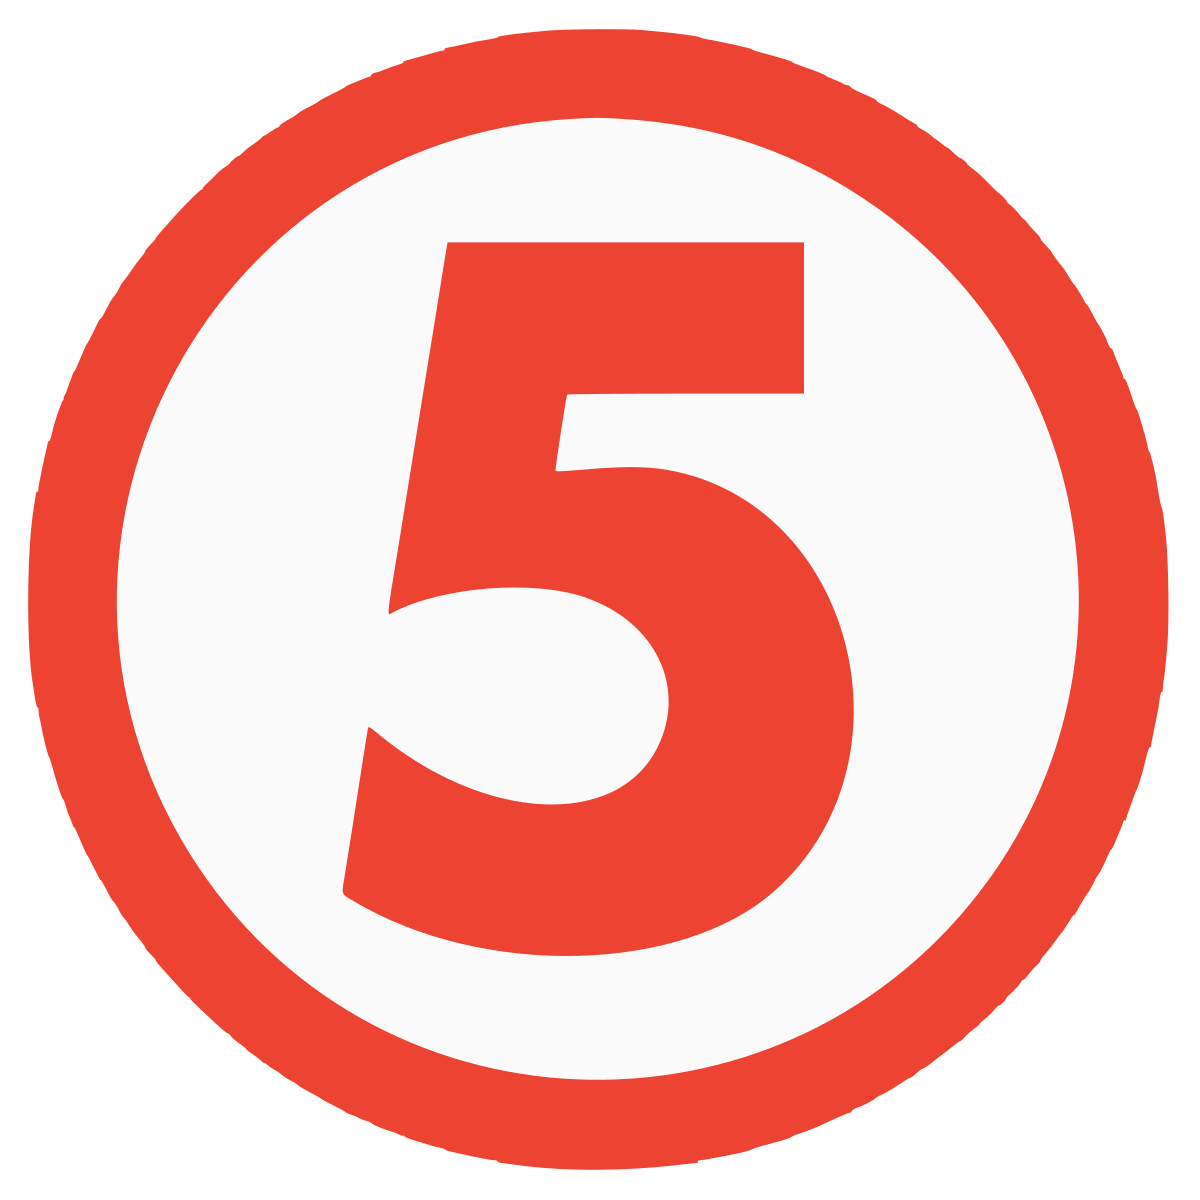 Channel 5 Logo - (TV channel)